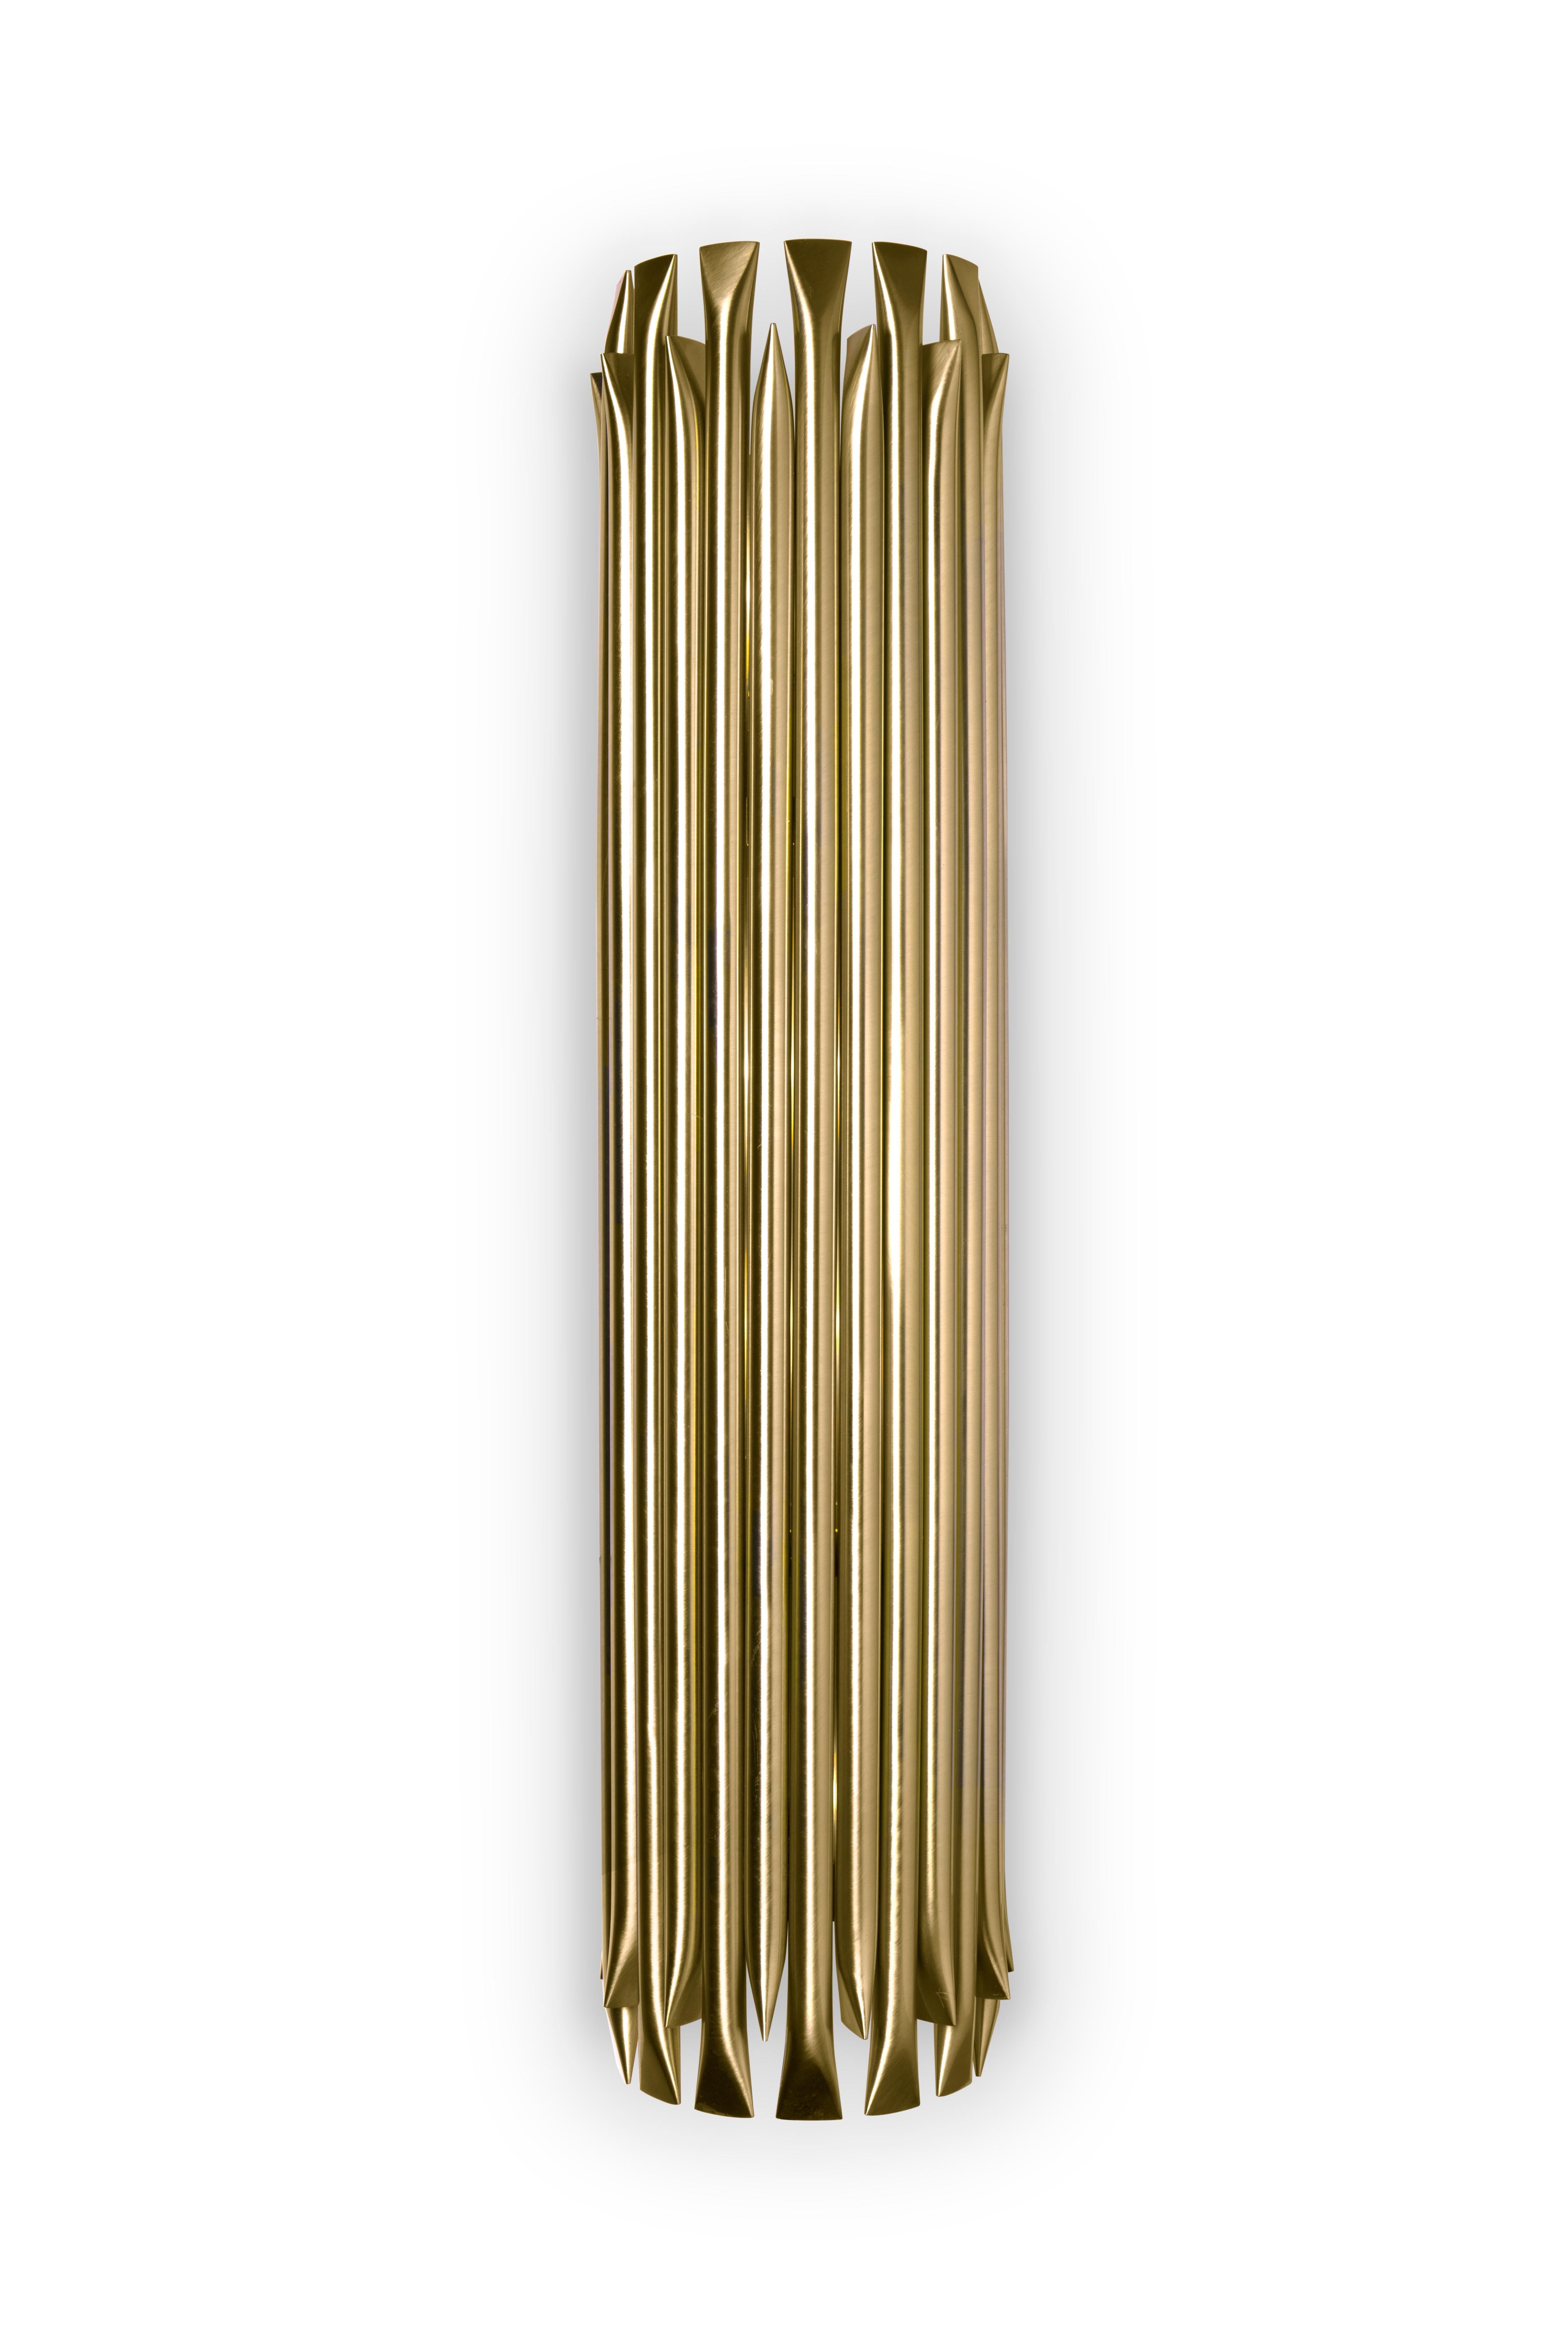 Die Wandleuchte Matheny hat eine komplexe und attraktive Geometrie aus kombinierten Röhren. Diese einzigartige Leuchte kombiniert ein modernes Mid-Century-Design mit einem klassischen Stil, der in Ihrem Zuhause für Aufsehen sorgen wird. Diese